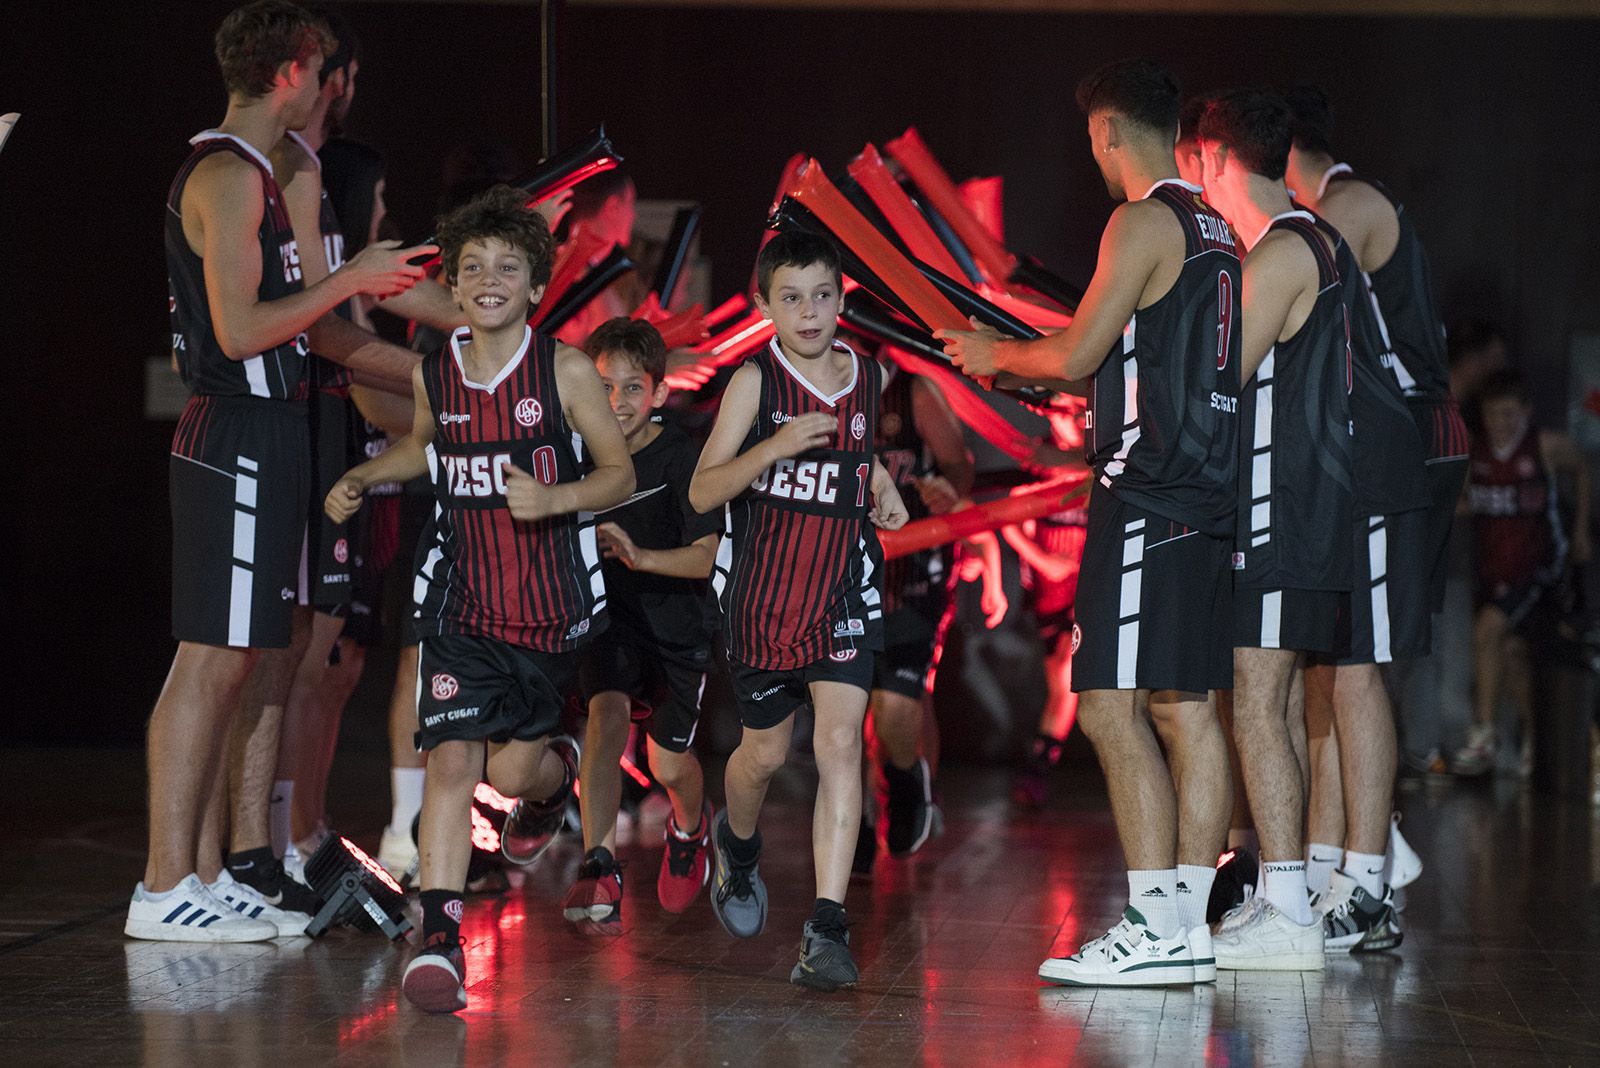 Presentació dels equips de la Unió Esportiva Sant Cugat. FOTO: Bernat Millet.